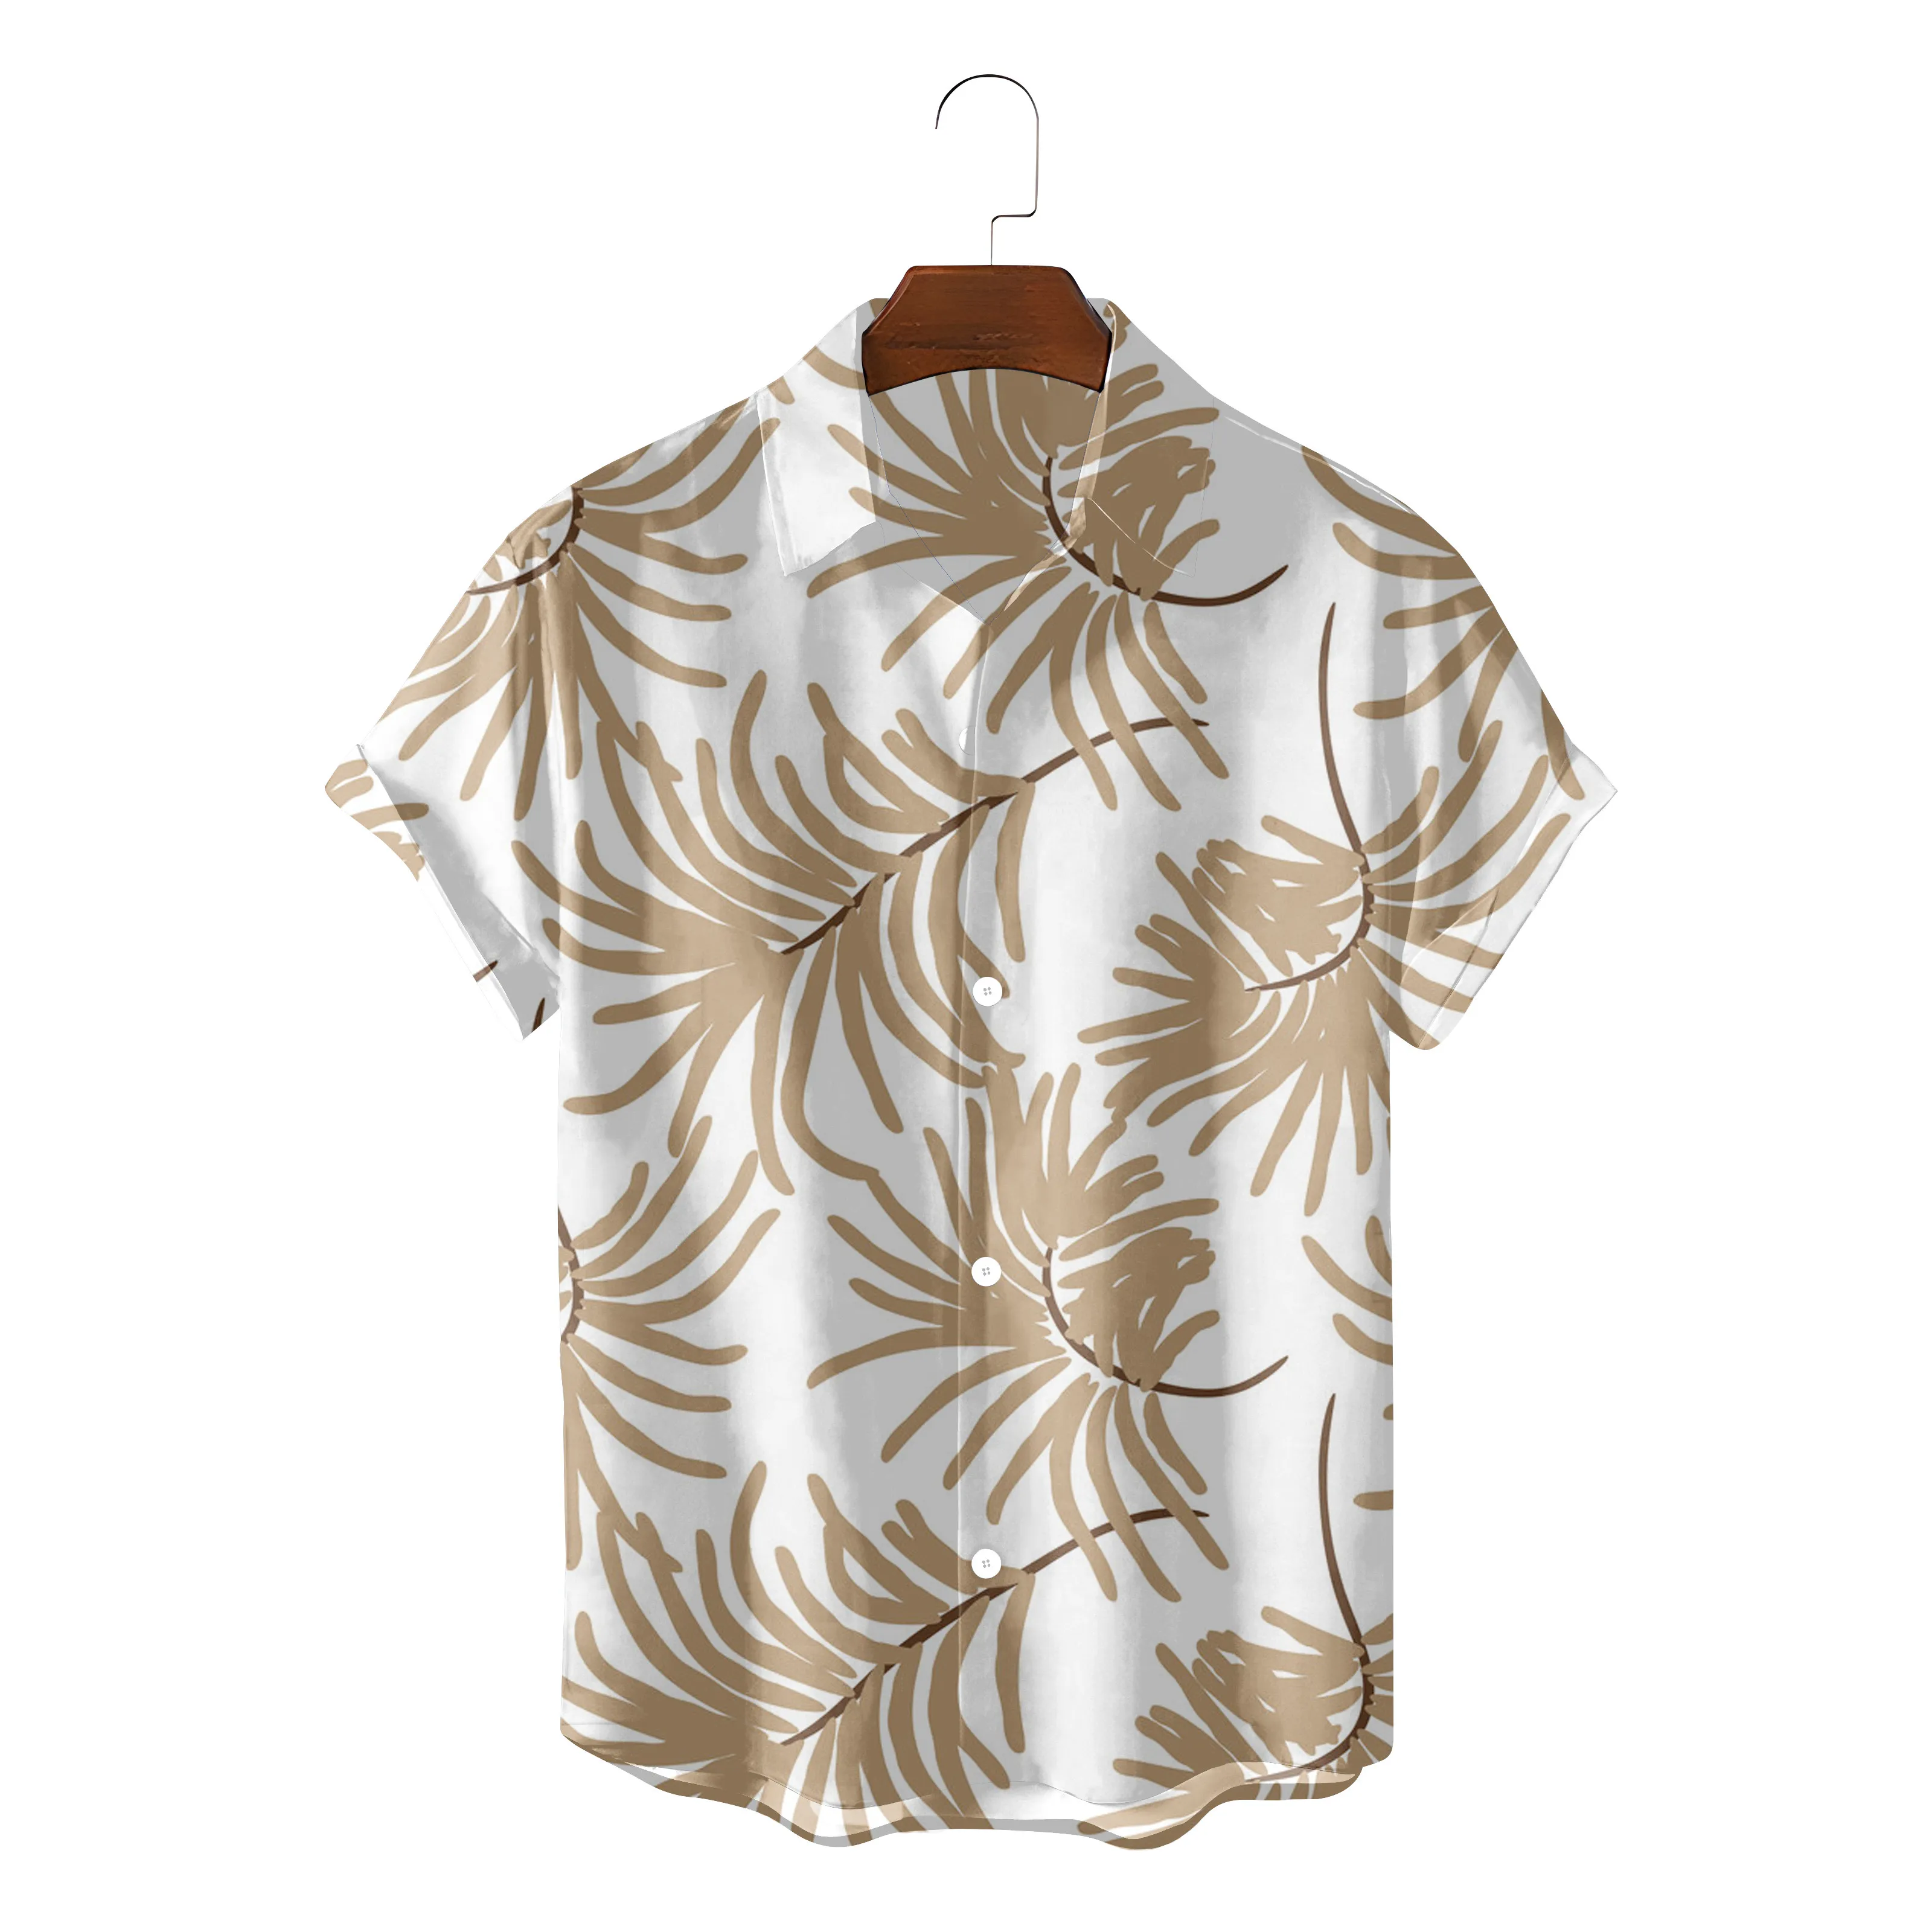 

Летняя модная мужская гавайская рубашка, Повседневная пляжная блуза с коротким рукавом, на пуговицах, с рисунком листьев, Размер 5XL, 26 цветов